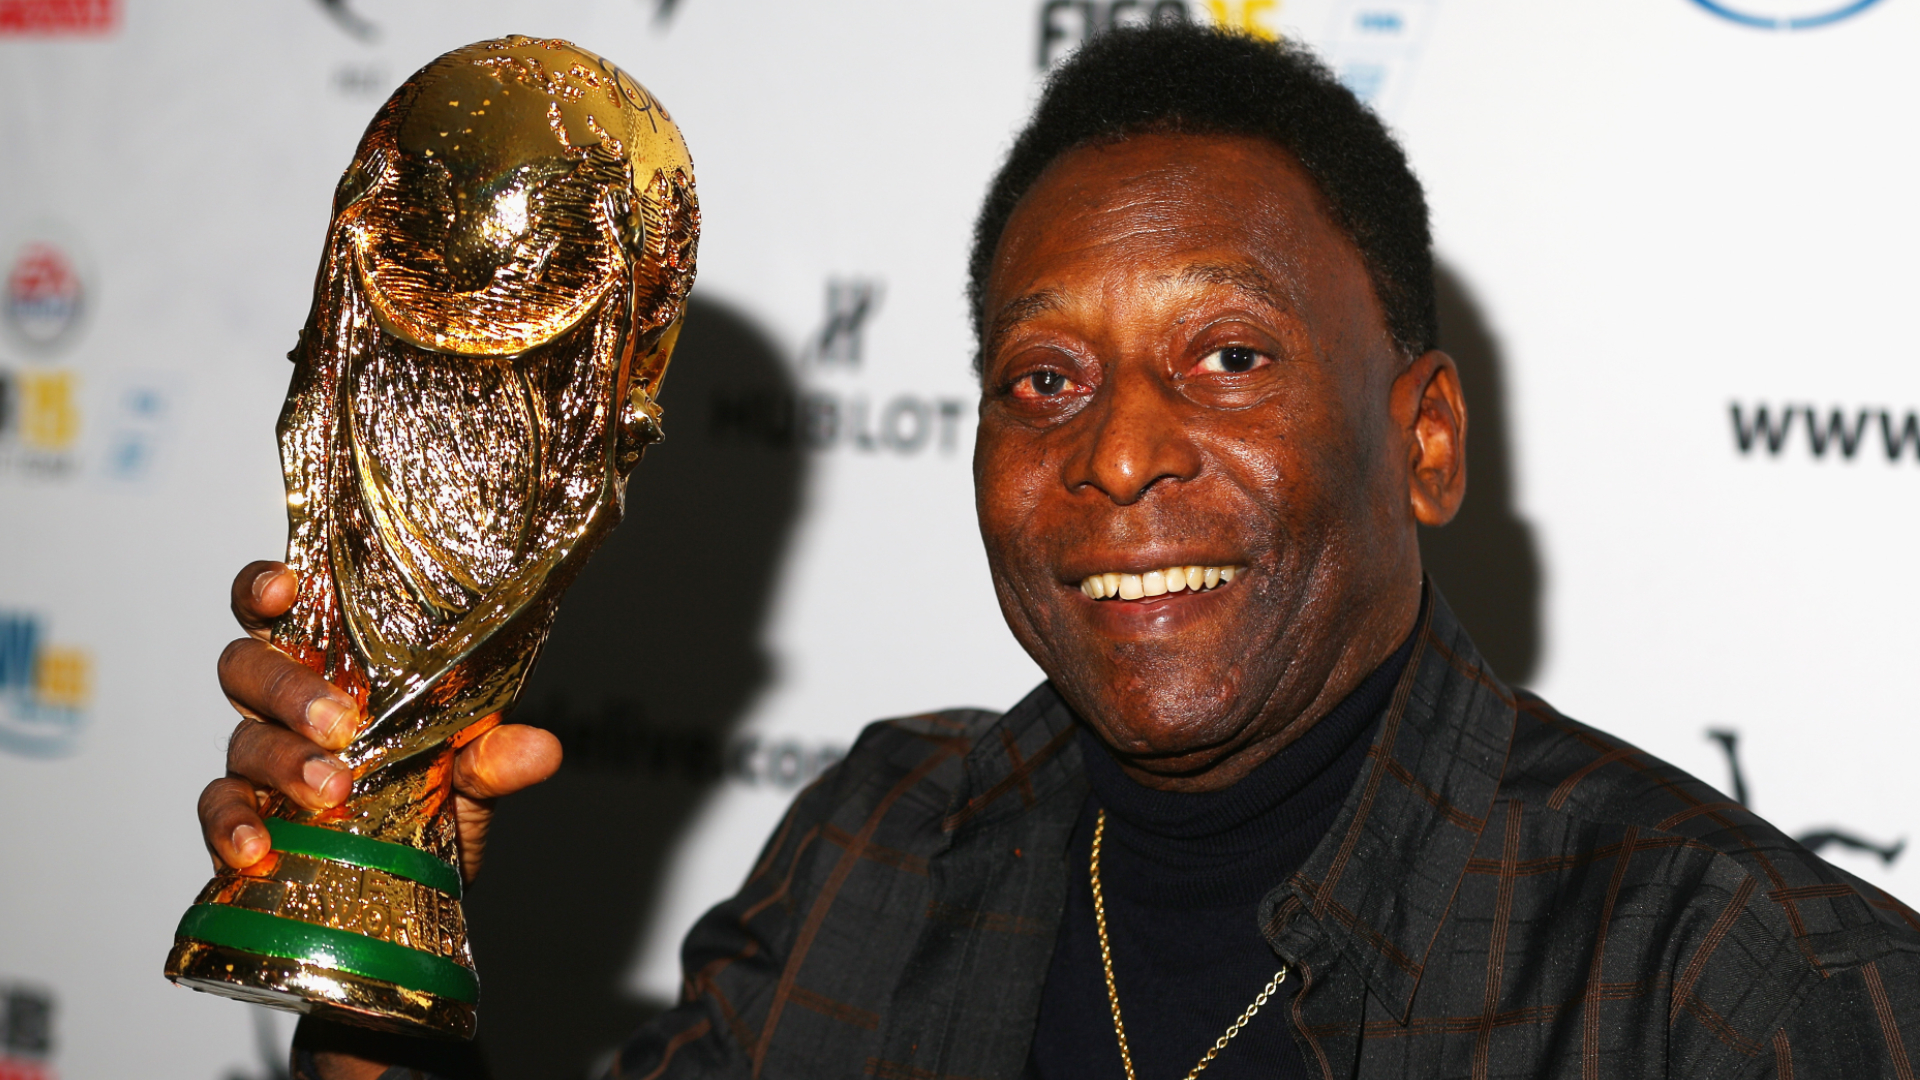 Infantino pretende que todos los países tengan al menos un estadio que se llame Pelé